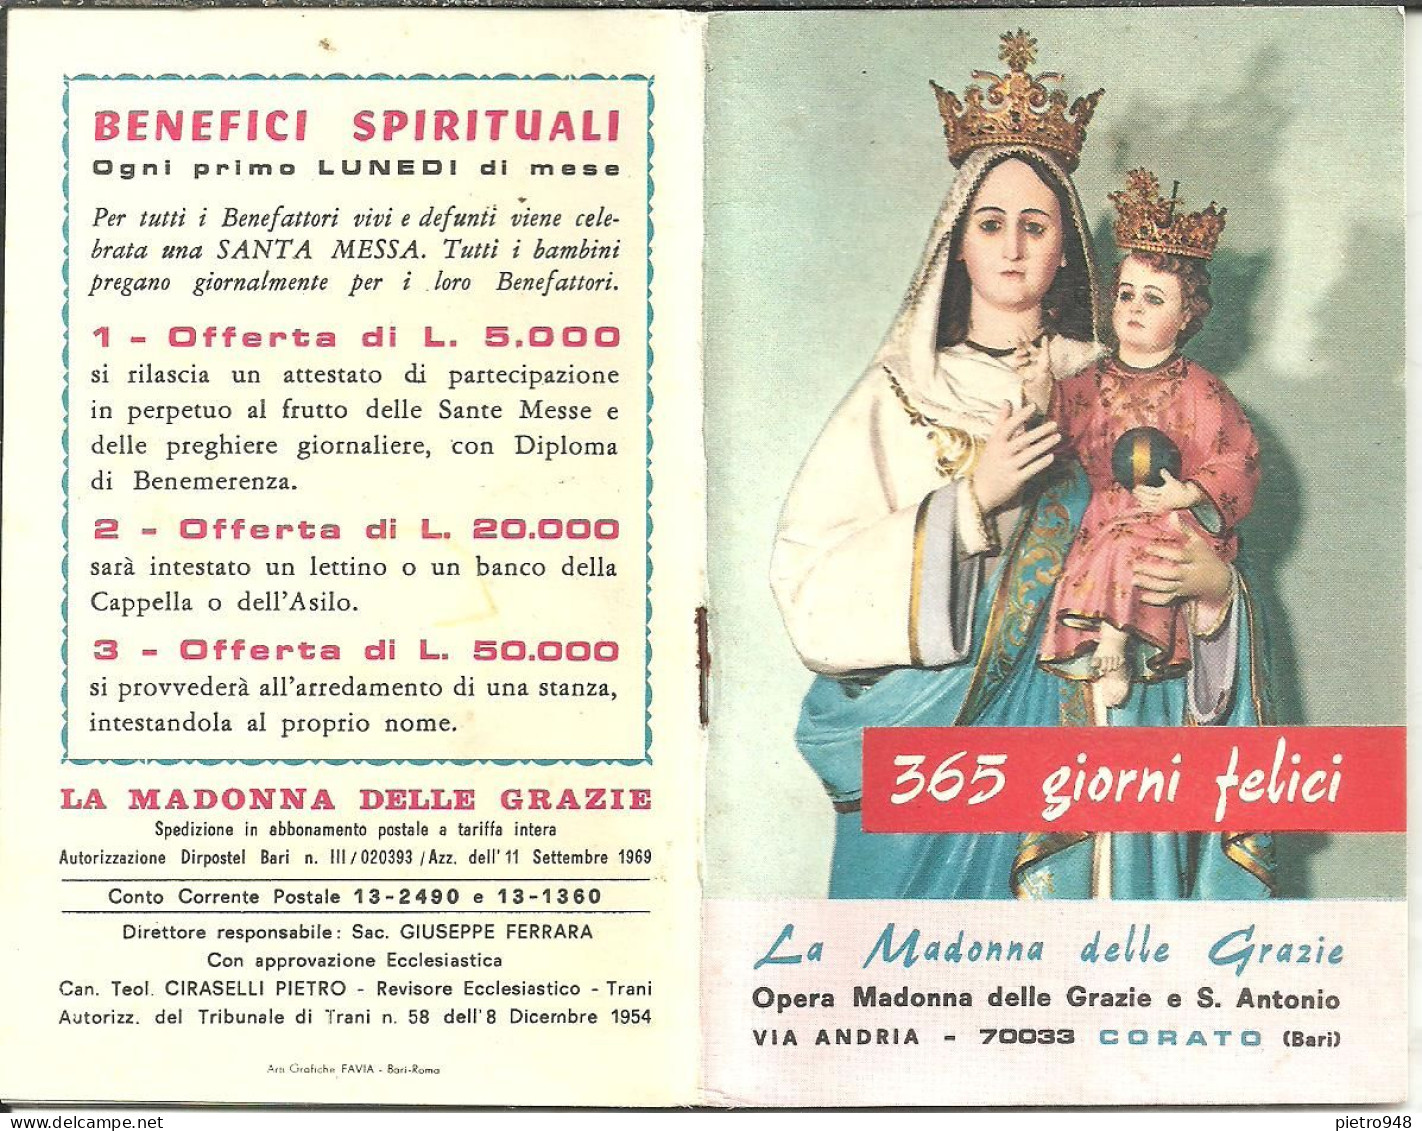 Libro (Libretto) Religioso "Opera Madonna Delle Grazie E Sant'Antonio" Corato (Bari), Agendina 1970 - Godsdienst / Spiritualisme